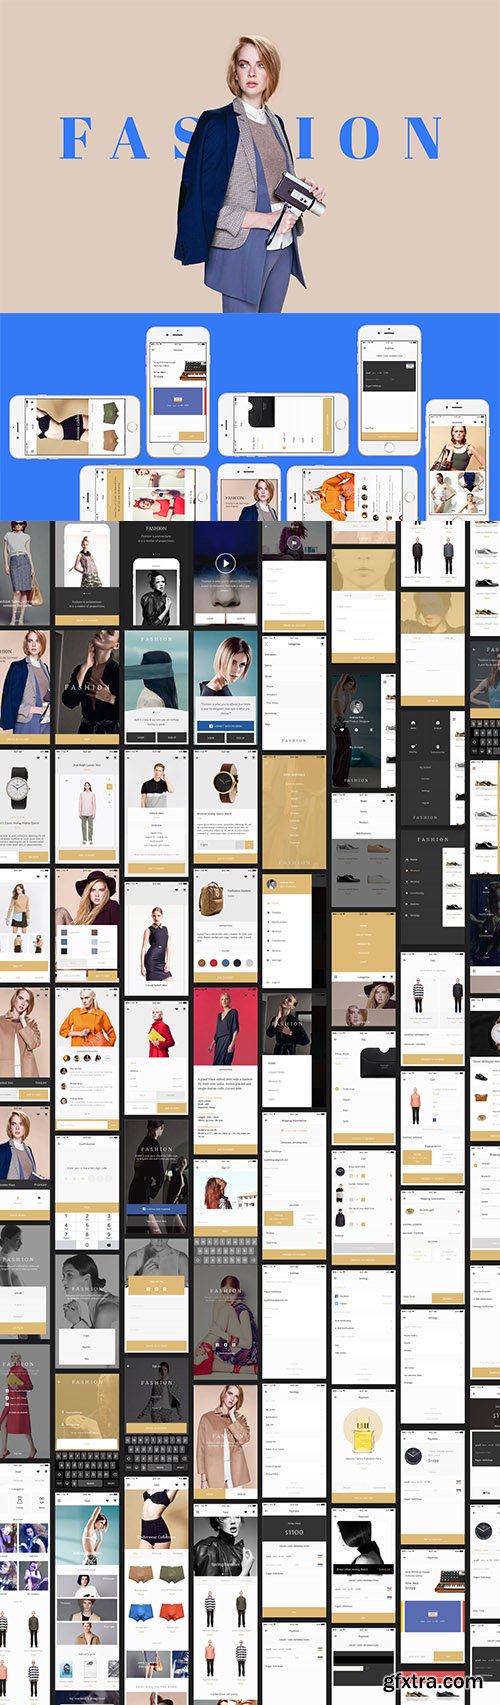 Fashion - E-Commerce Mobile UI Kit